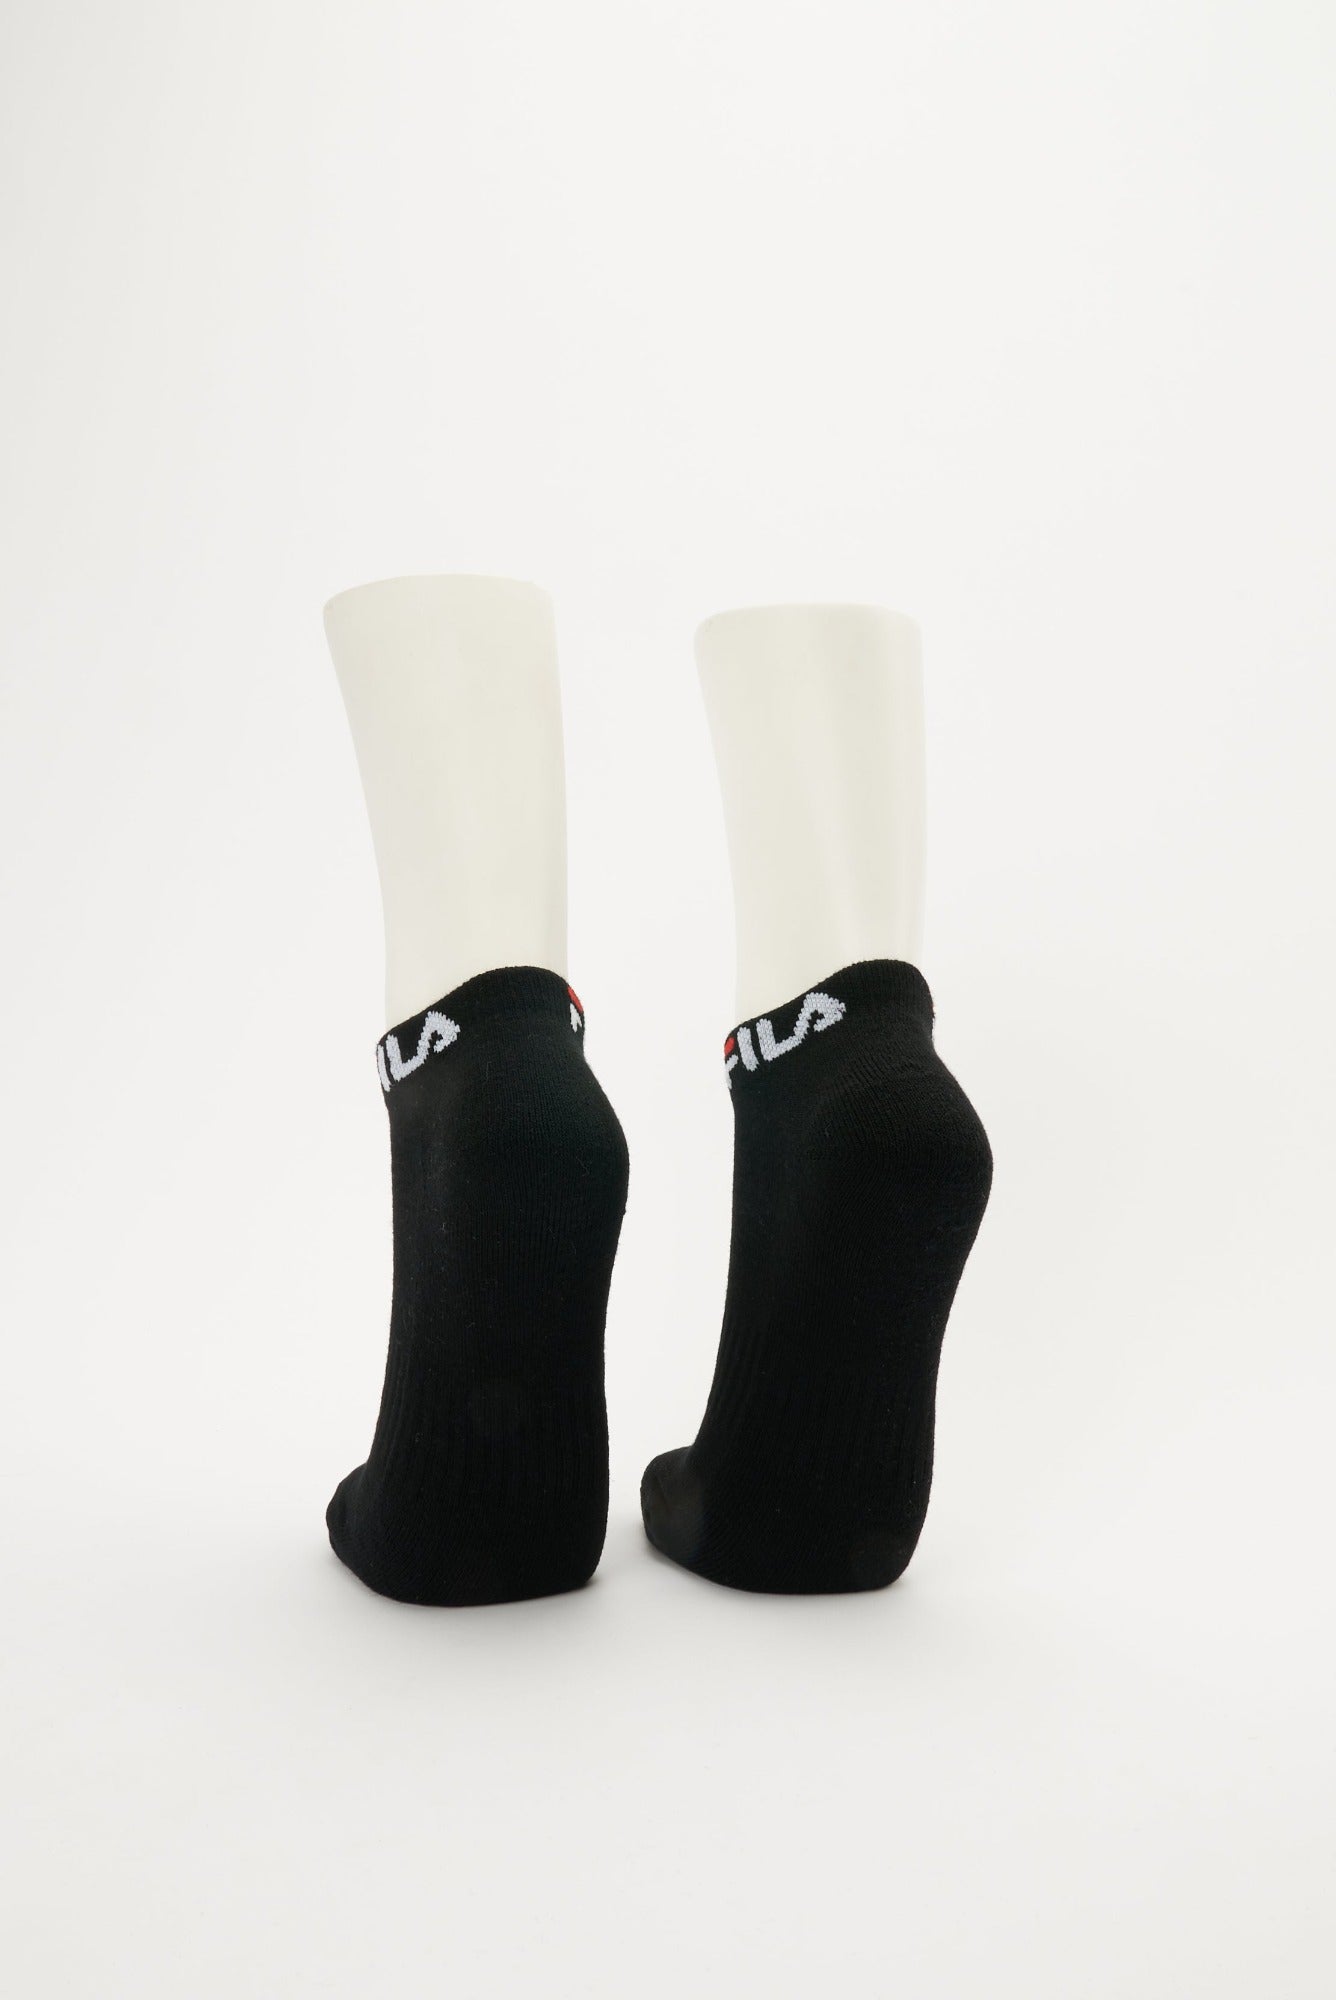 FILA Women's Stallone Ankle Socks 2 Pack (Size 3-8)